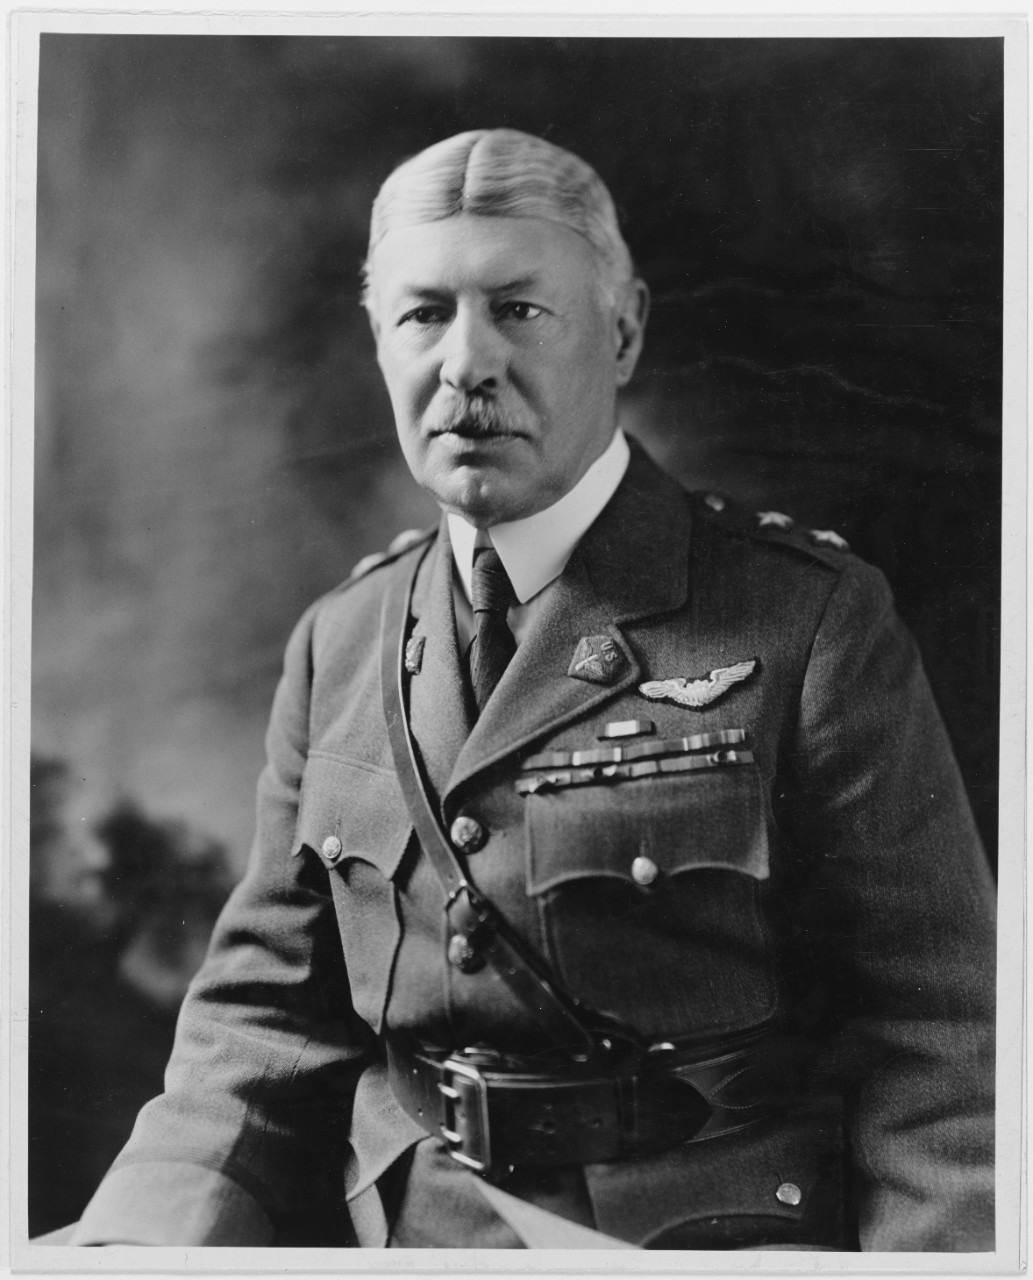 Major General Mason M. Patrick, USA, Air Service